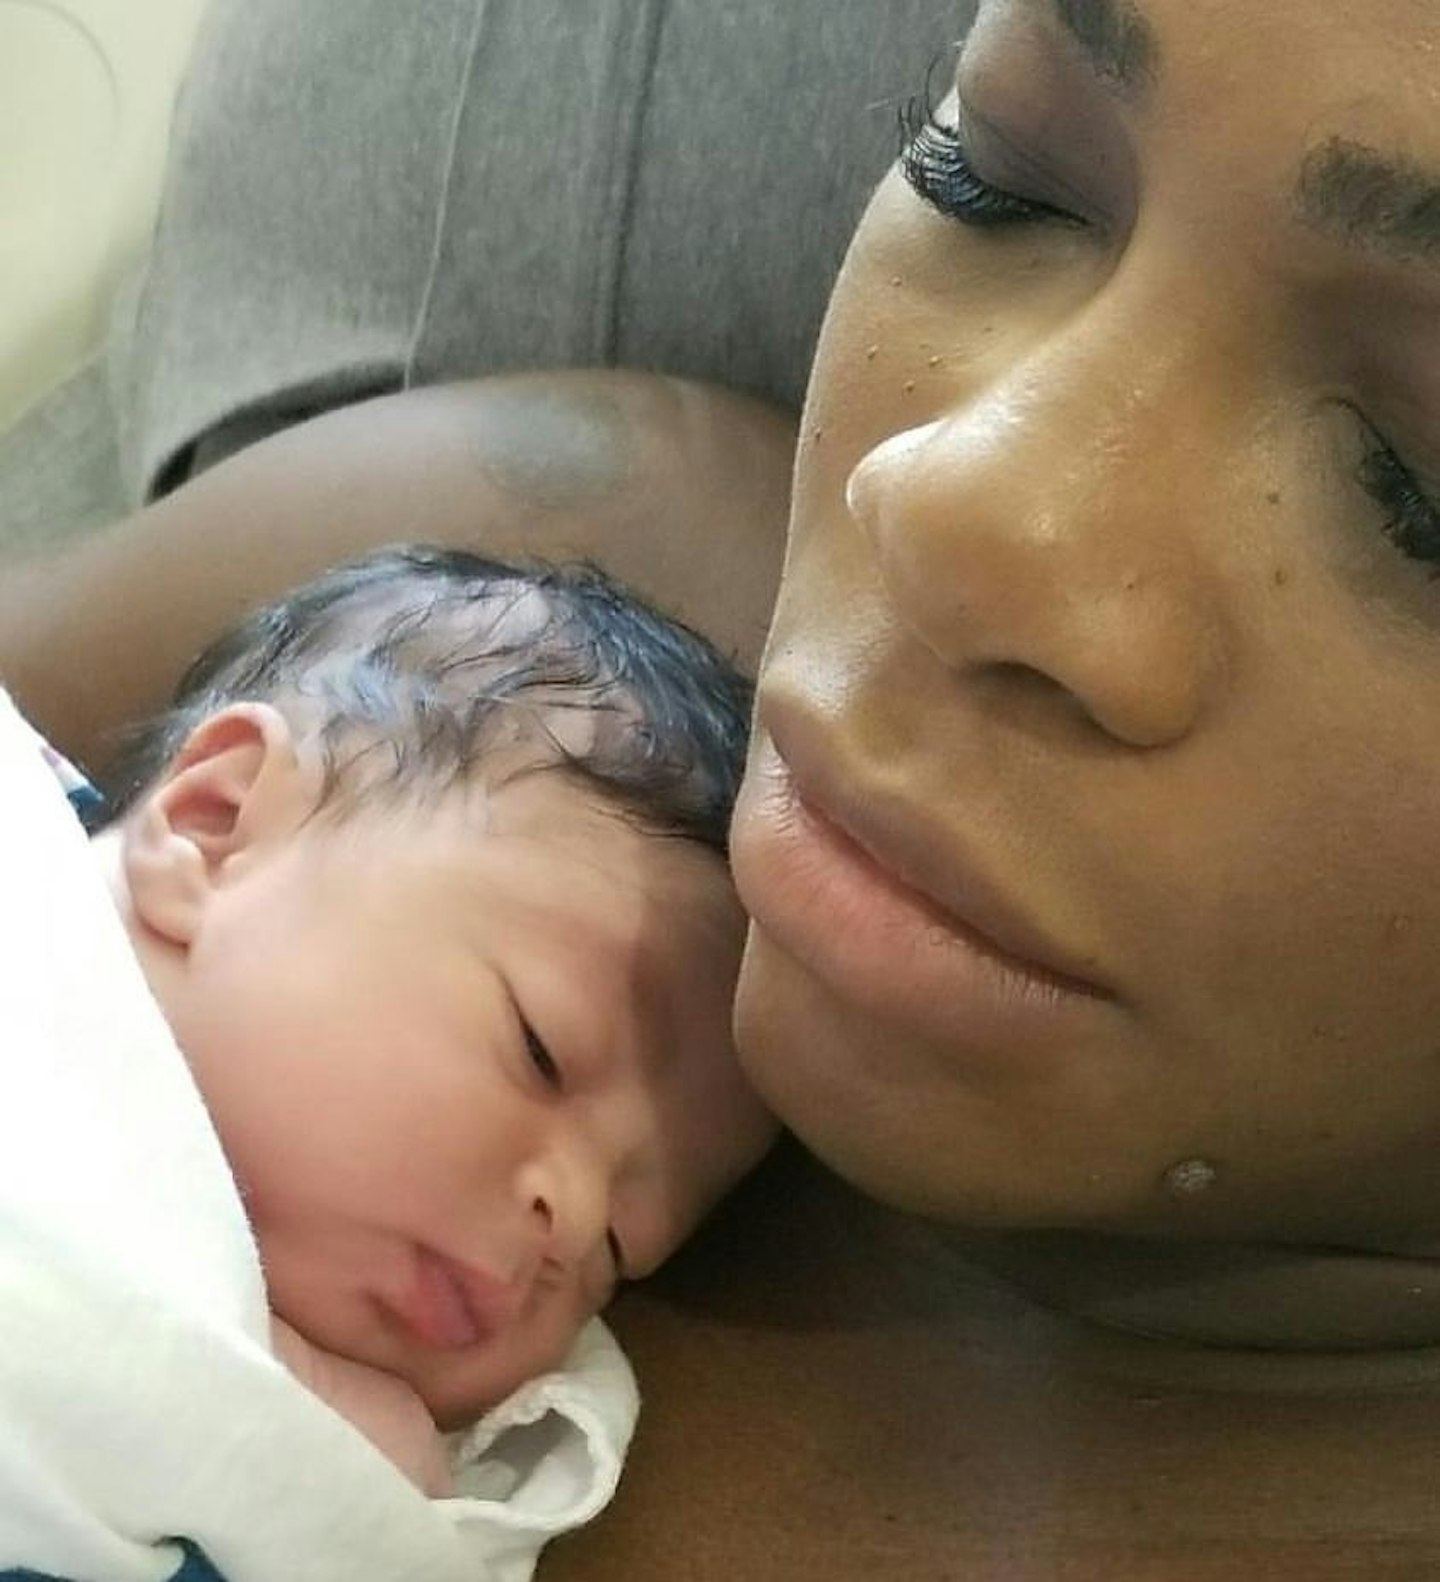 Serena Williams' baby, Alexis